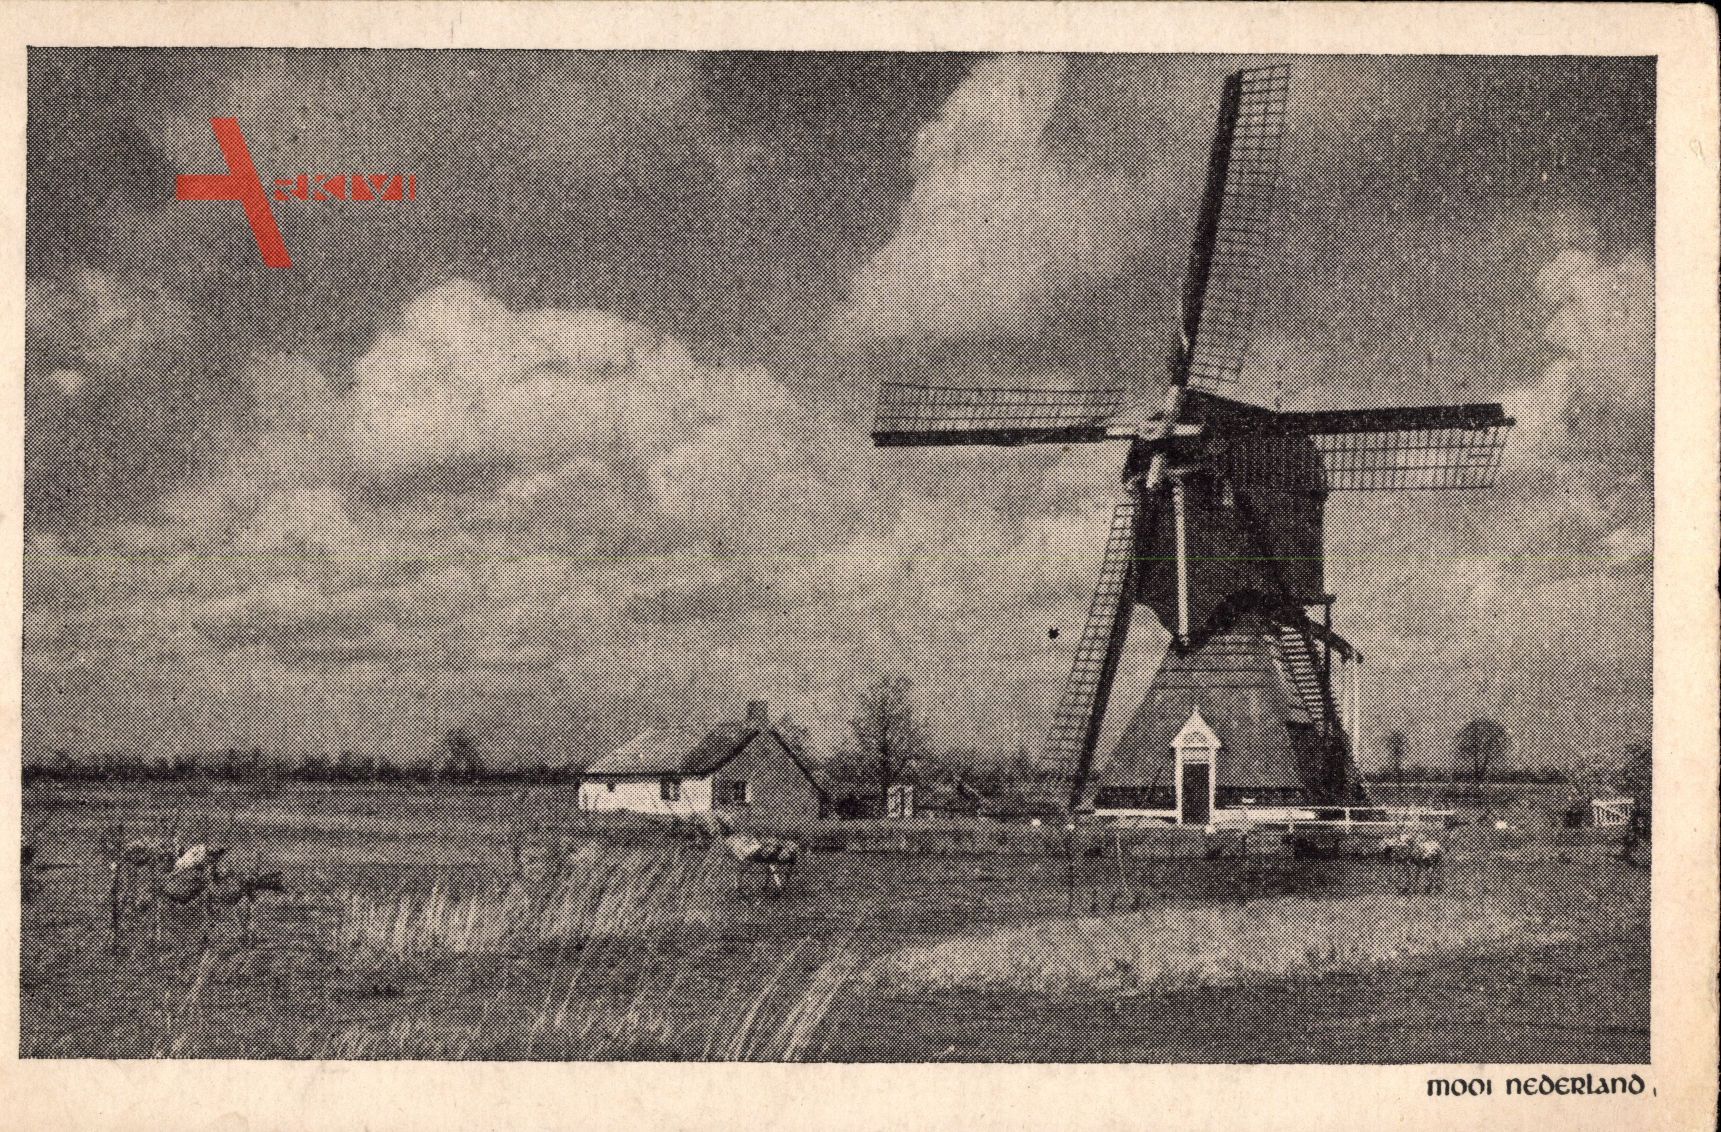 Niederlande, Mooi Nederland, Windmühle auf einem Feld